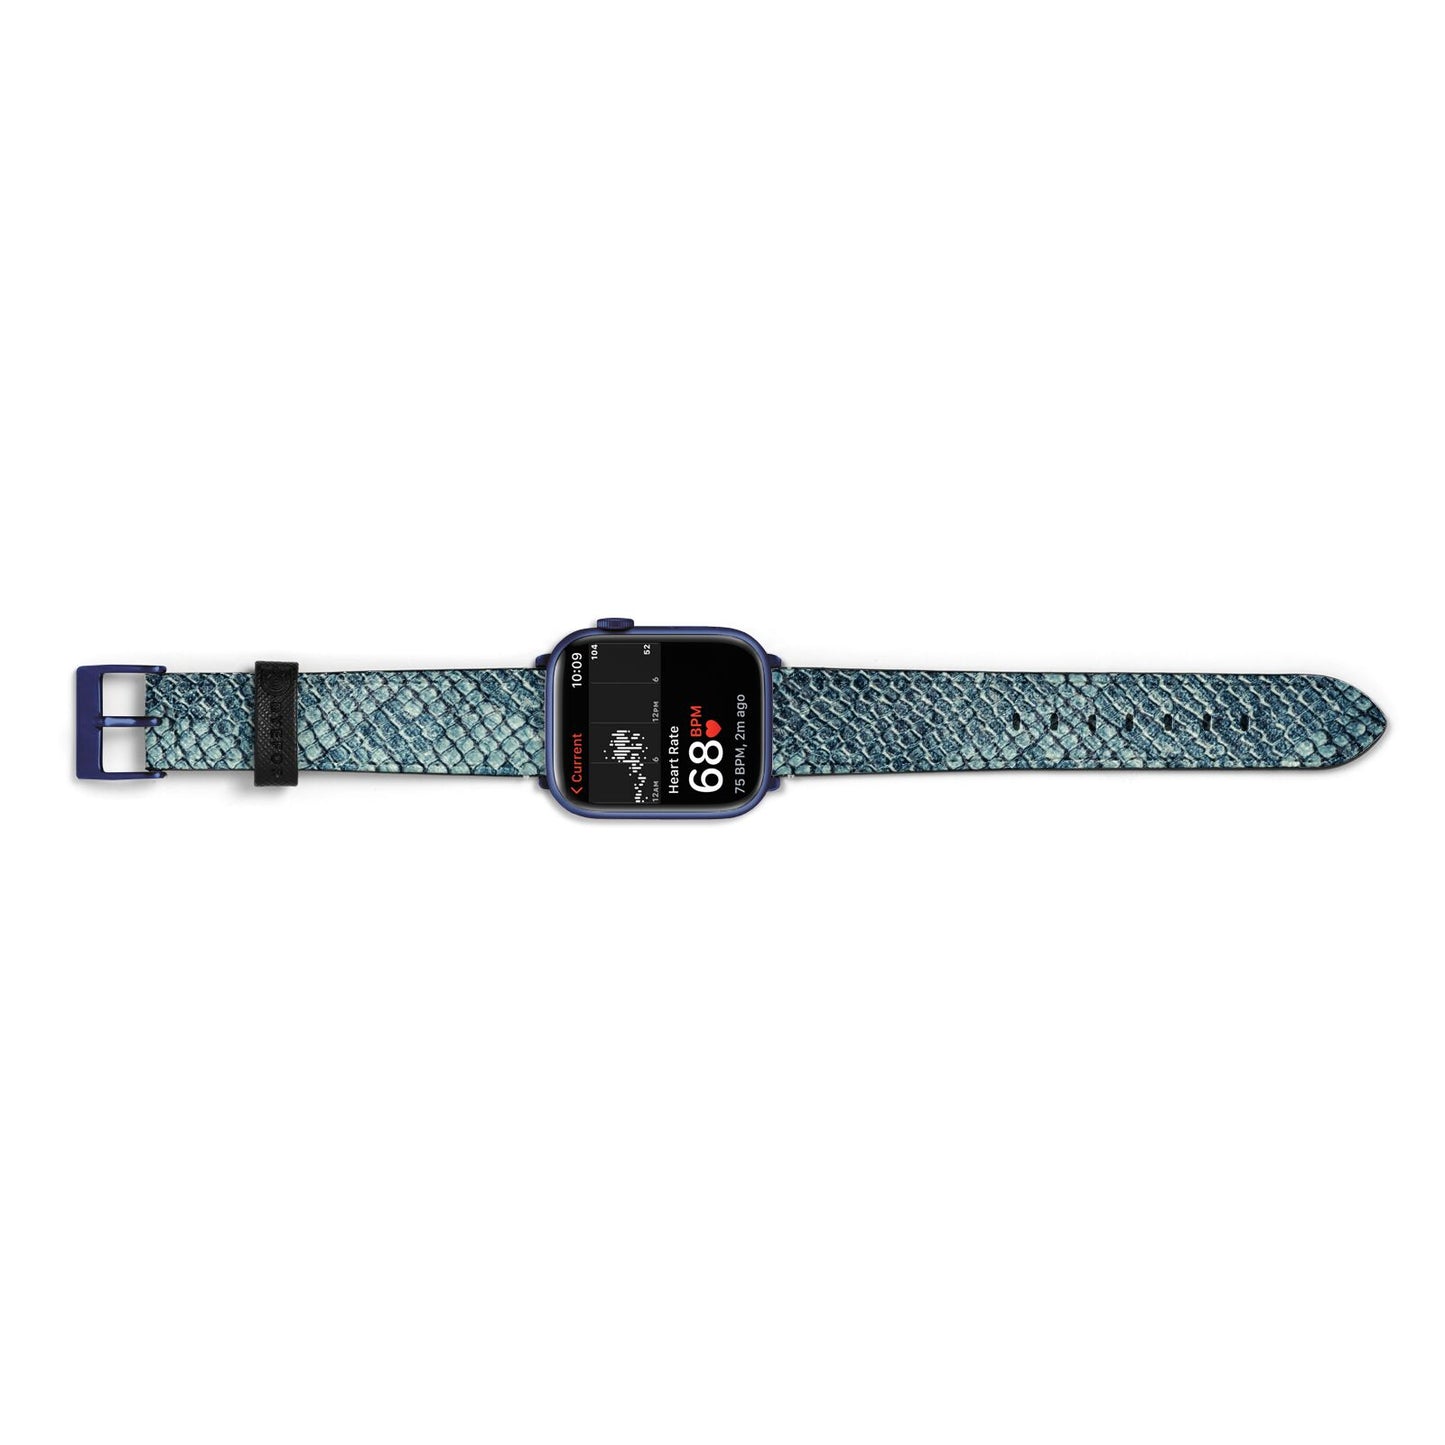 Teal Snakeskin Apple Watch Strap Size 38mm Landscape Image Blue Hardware